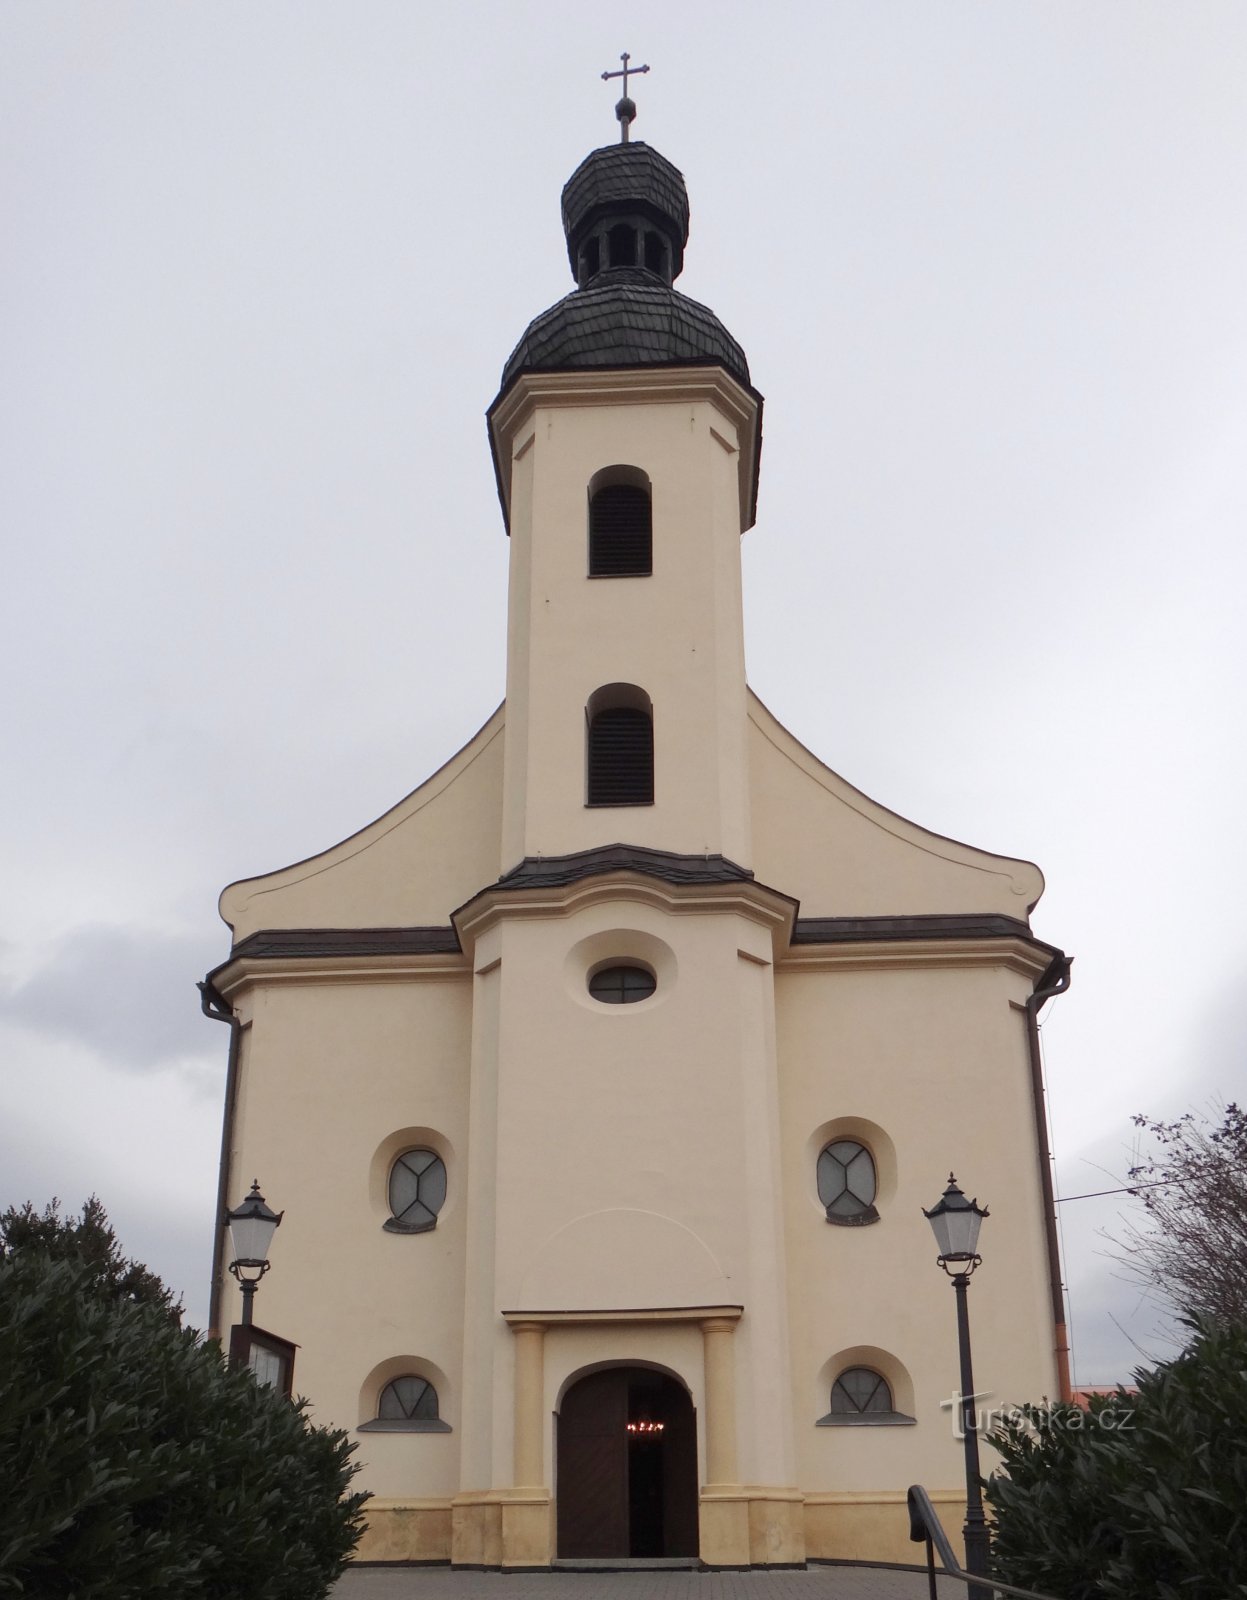 Hlúčín - crkva sv. Tržišta